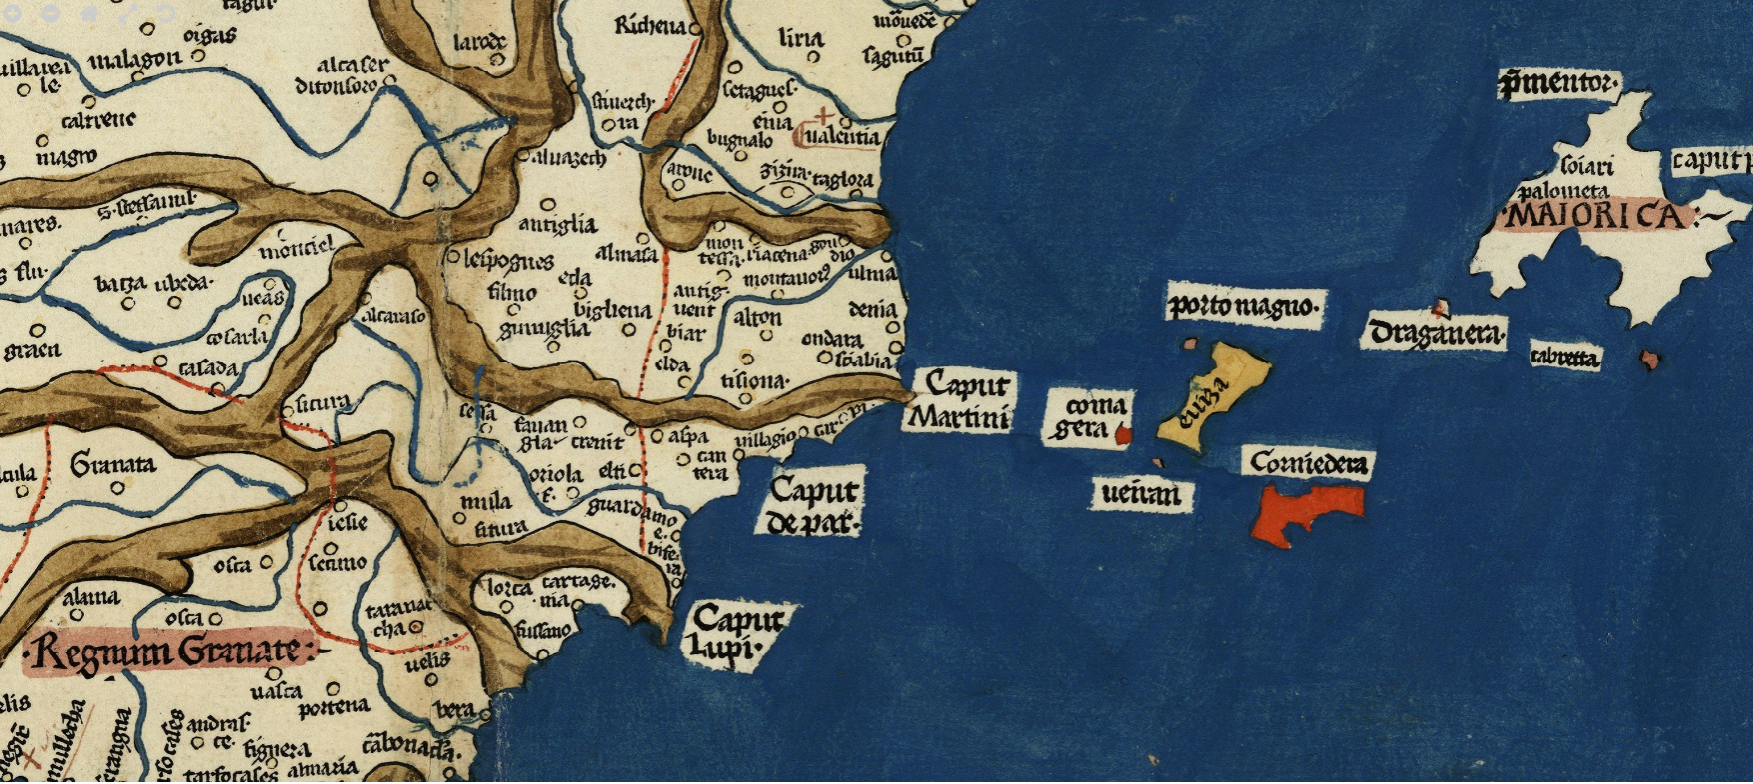 Mapa del quadrant sud oriental de la península ibèrica (1484). Font Cartoteca de Catalunya